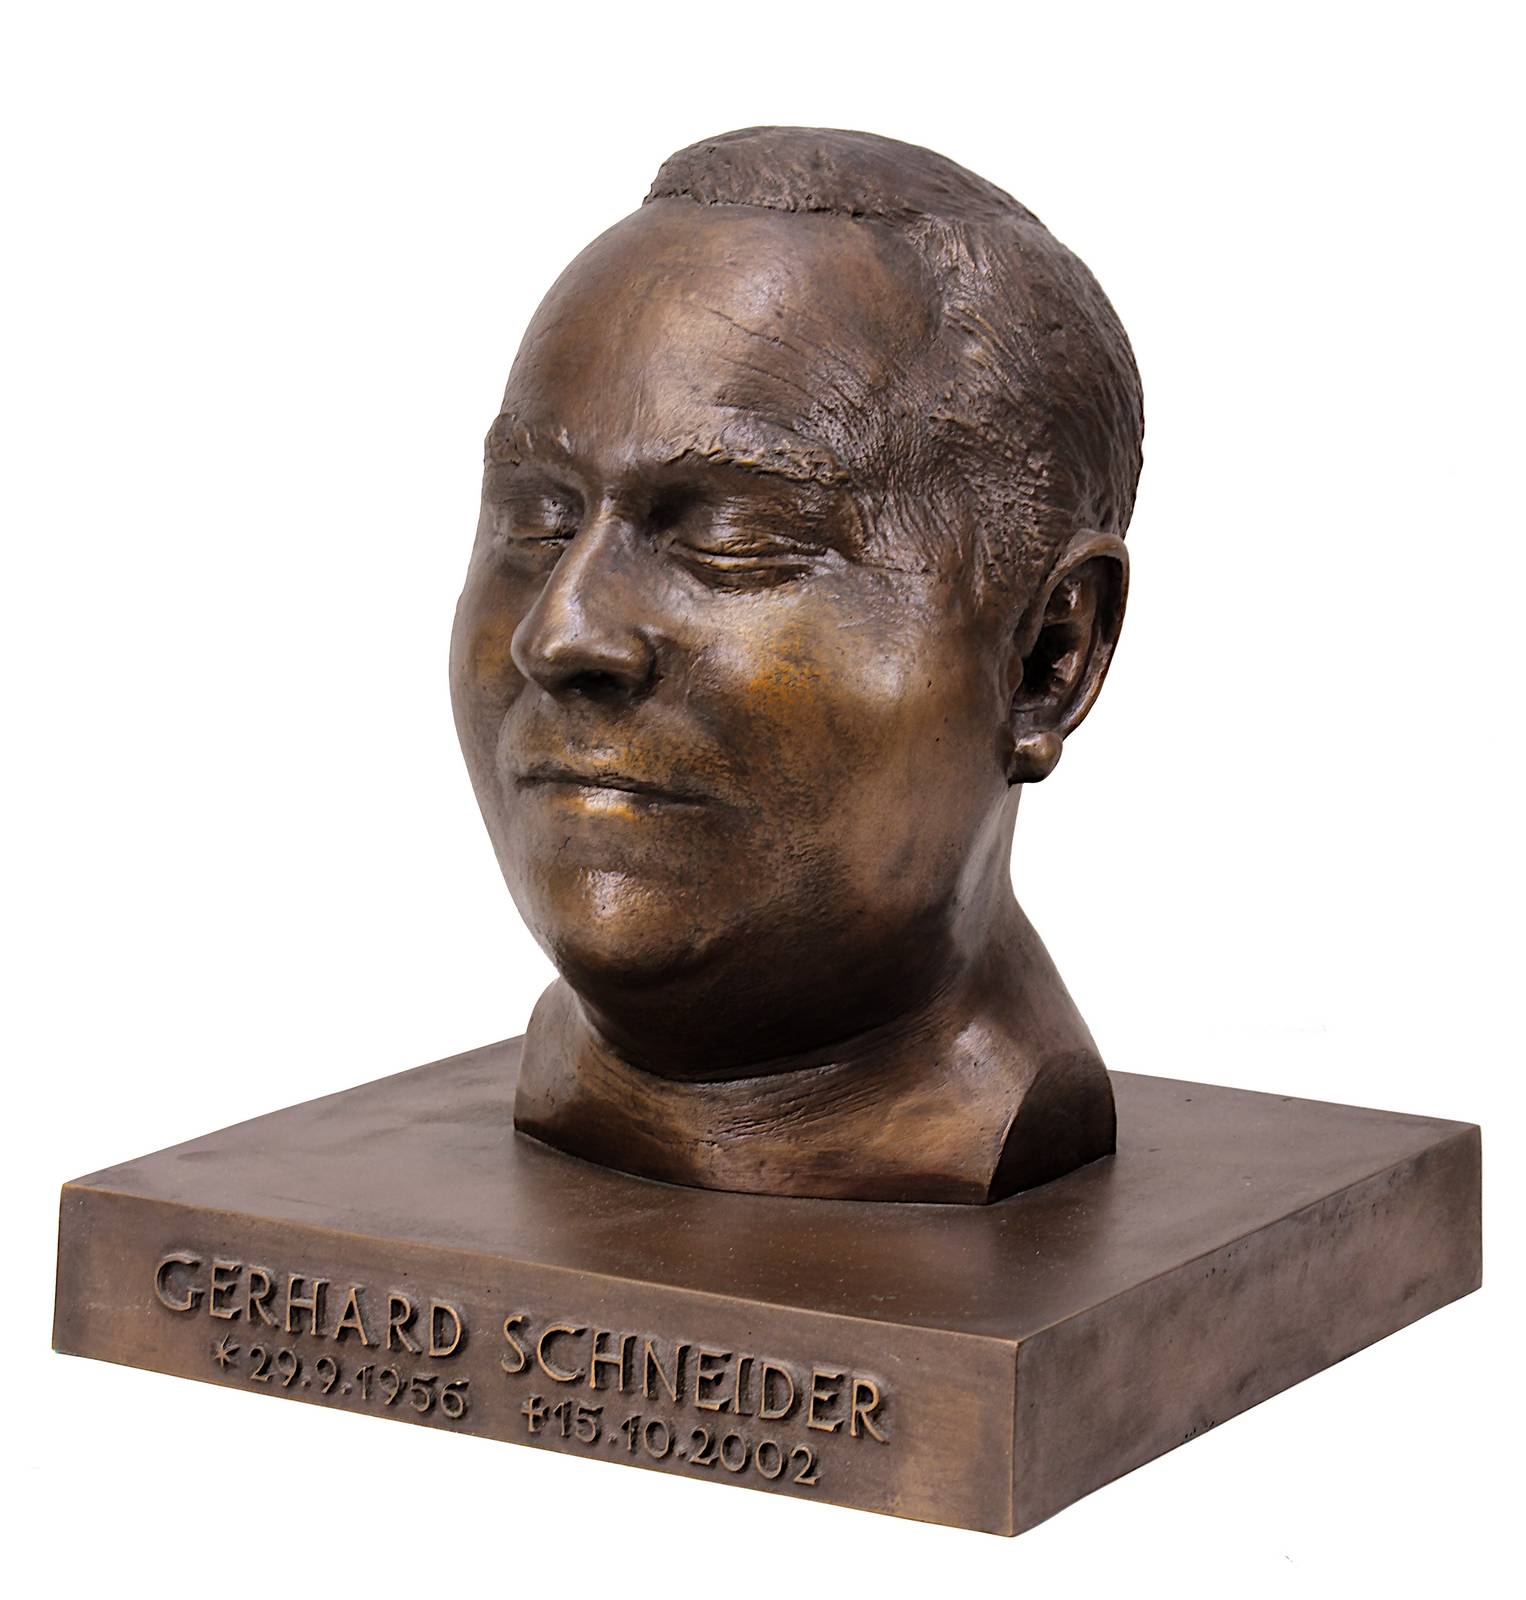 Porträtbüste Gerhard Schneider (29.9.1956 - 15.10.2002), Bronze mit brauner Patina, auf